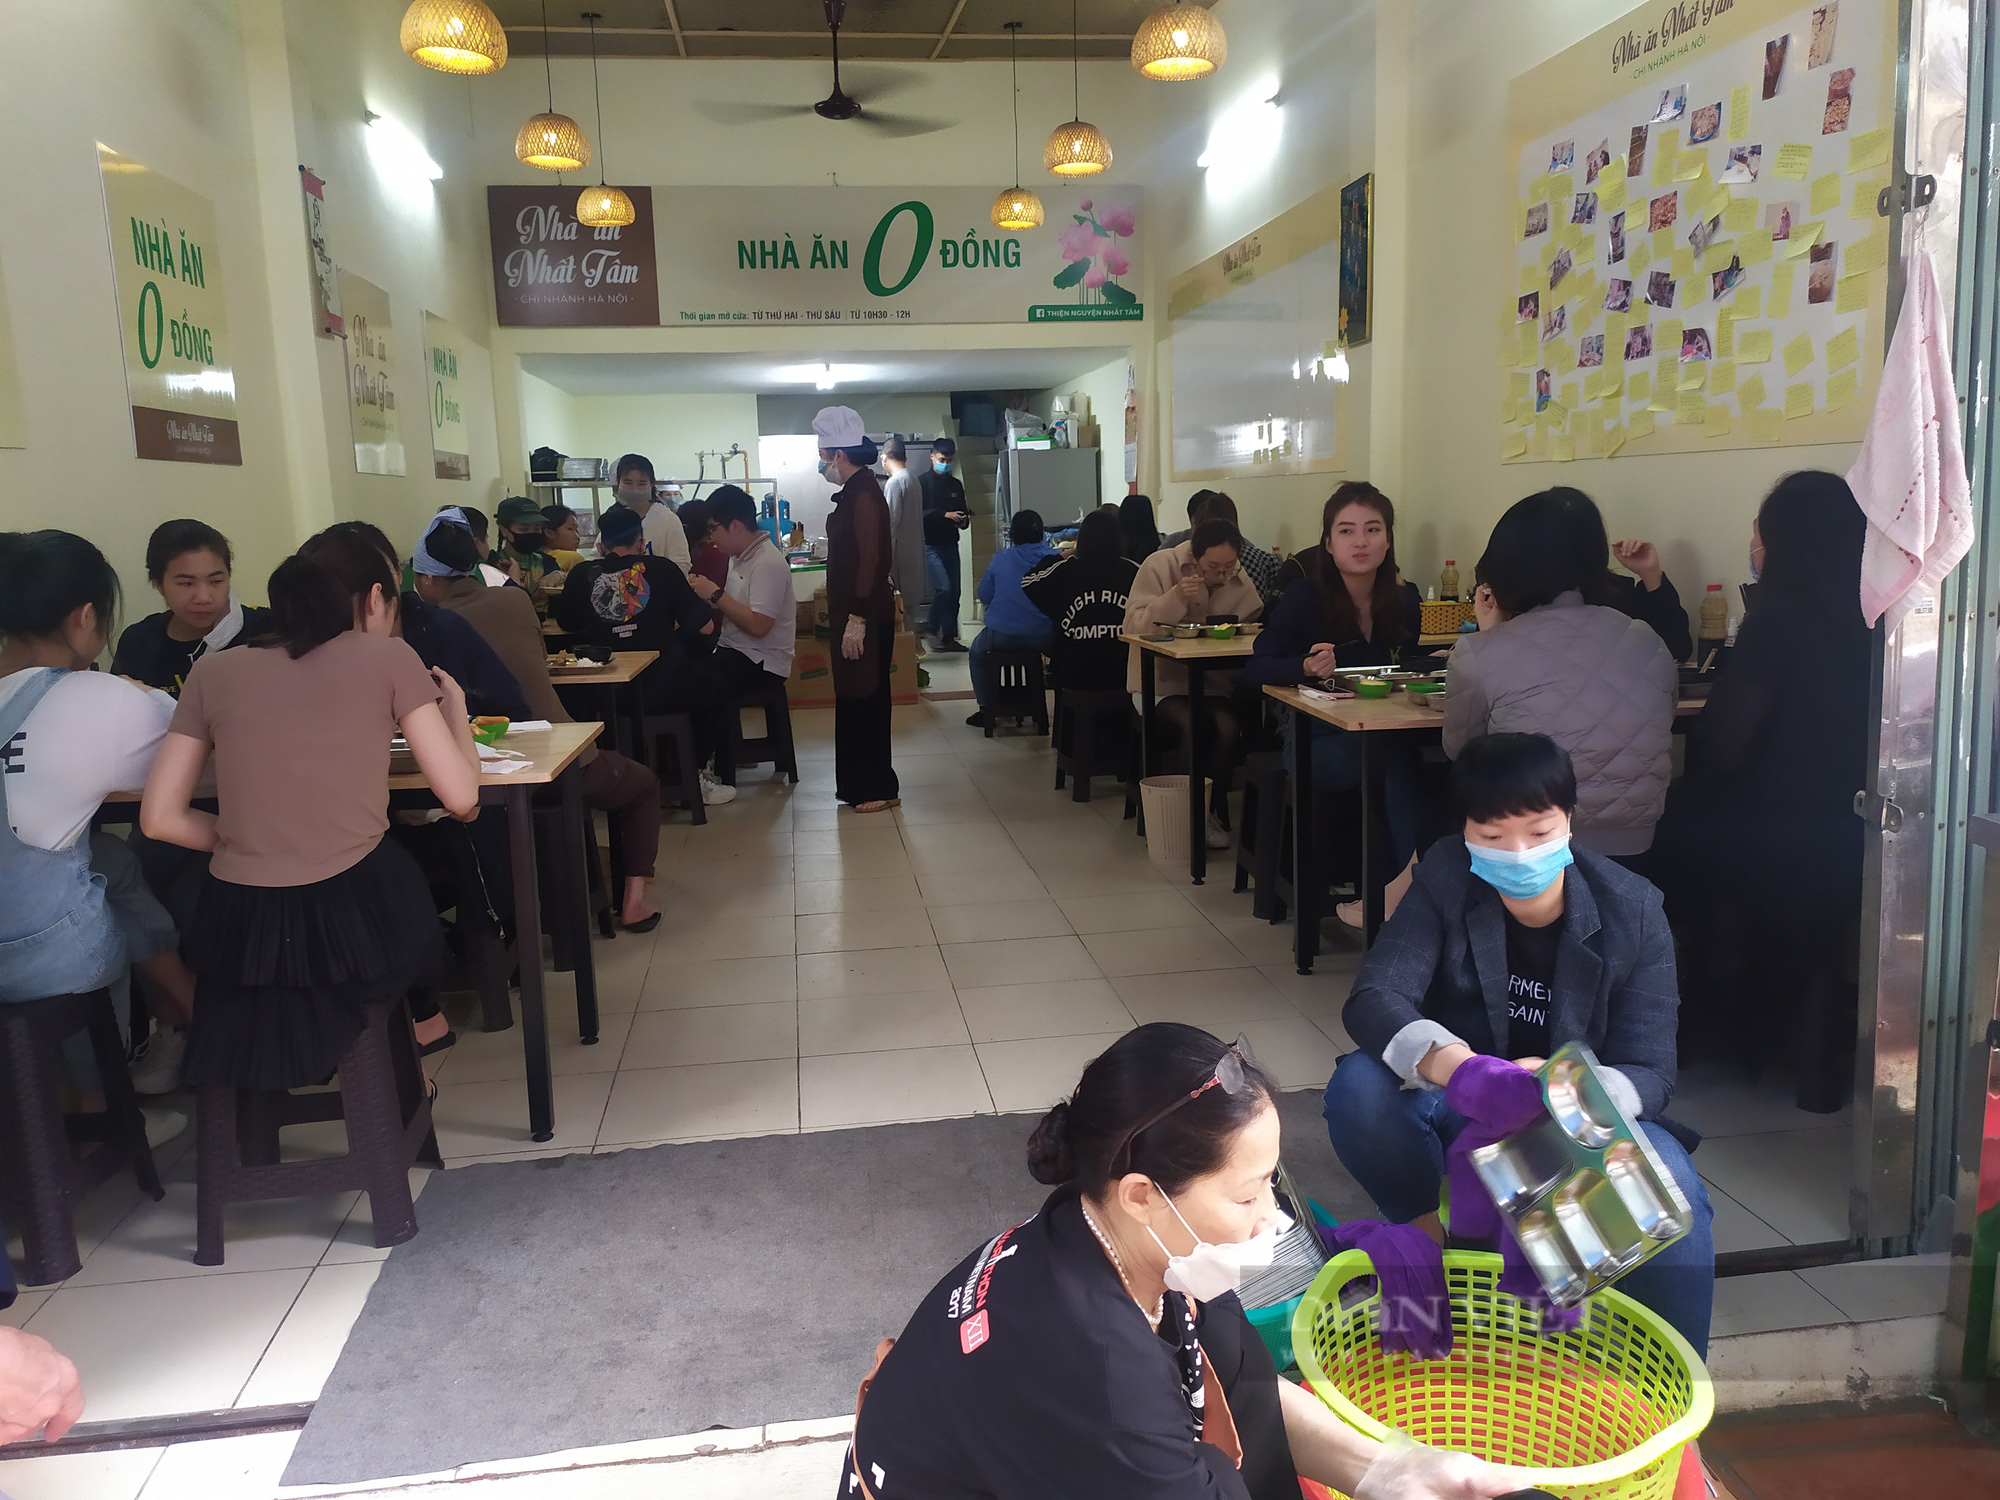 Quán chay 0 đồng phục vụ hàng trăm suất ăn mỗi ngày giữa lòng Thủ đô Hà Nội - Ảnh 5.